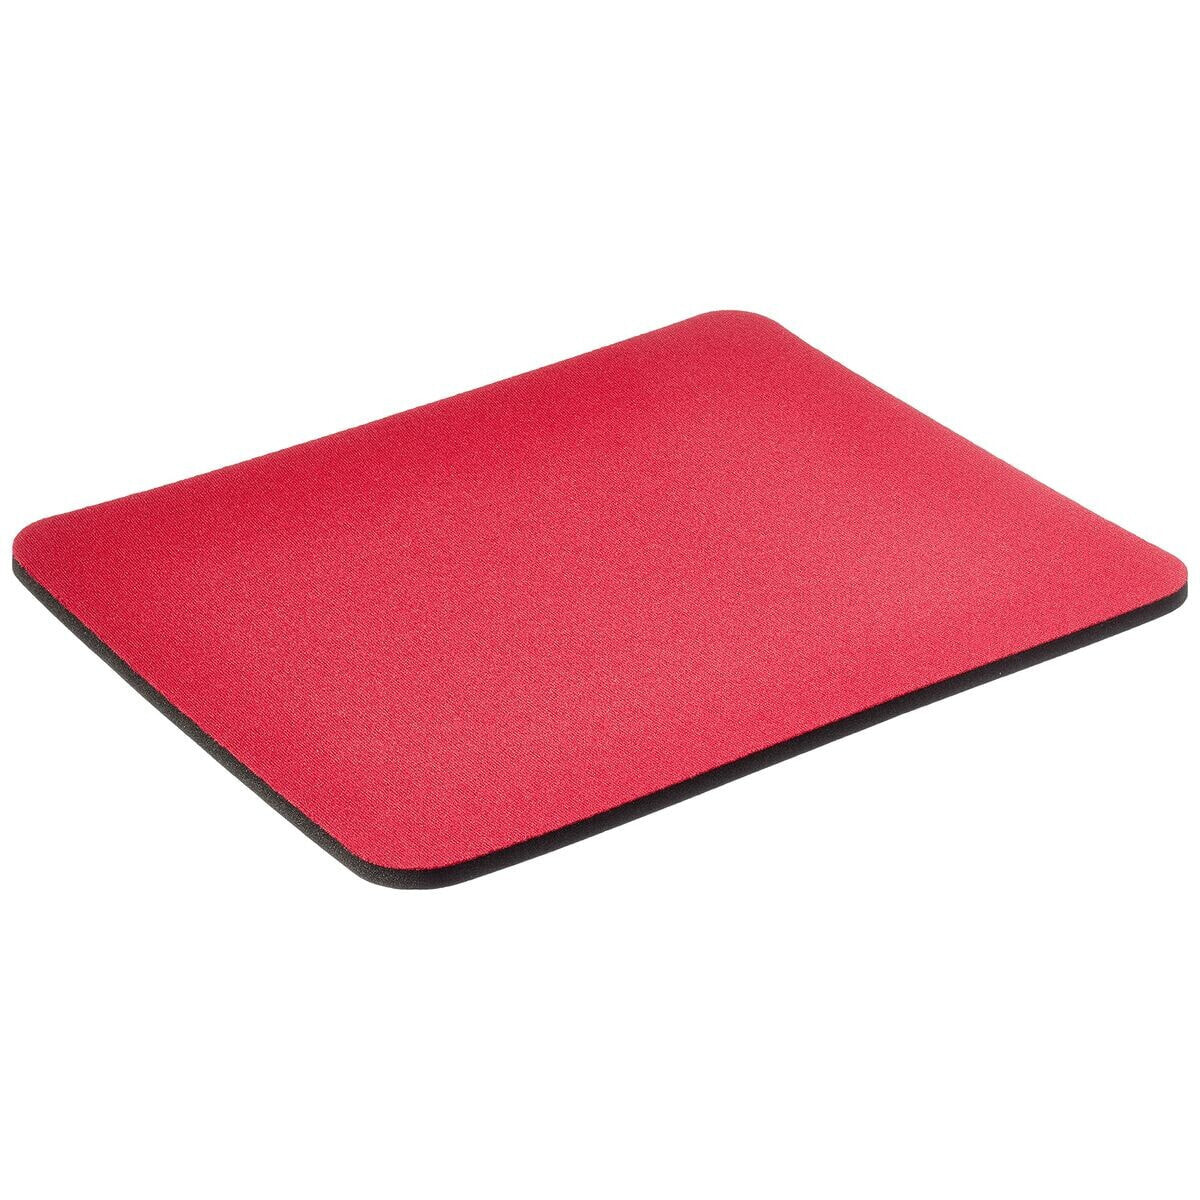 Нескользящий коврик Fellowes 19 x 22 cm Красный (Пересмотрено A+)